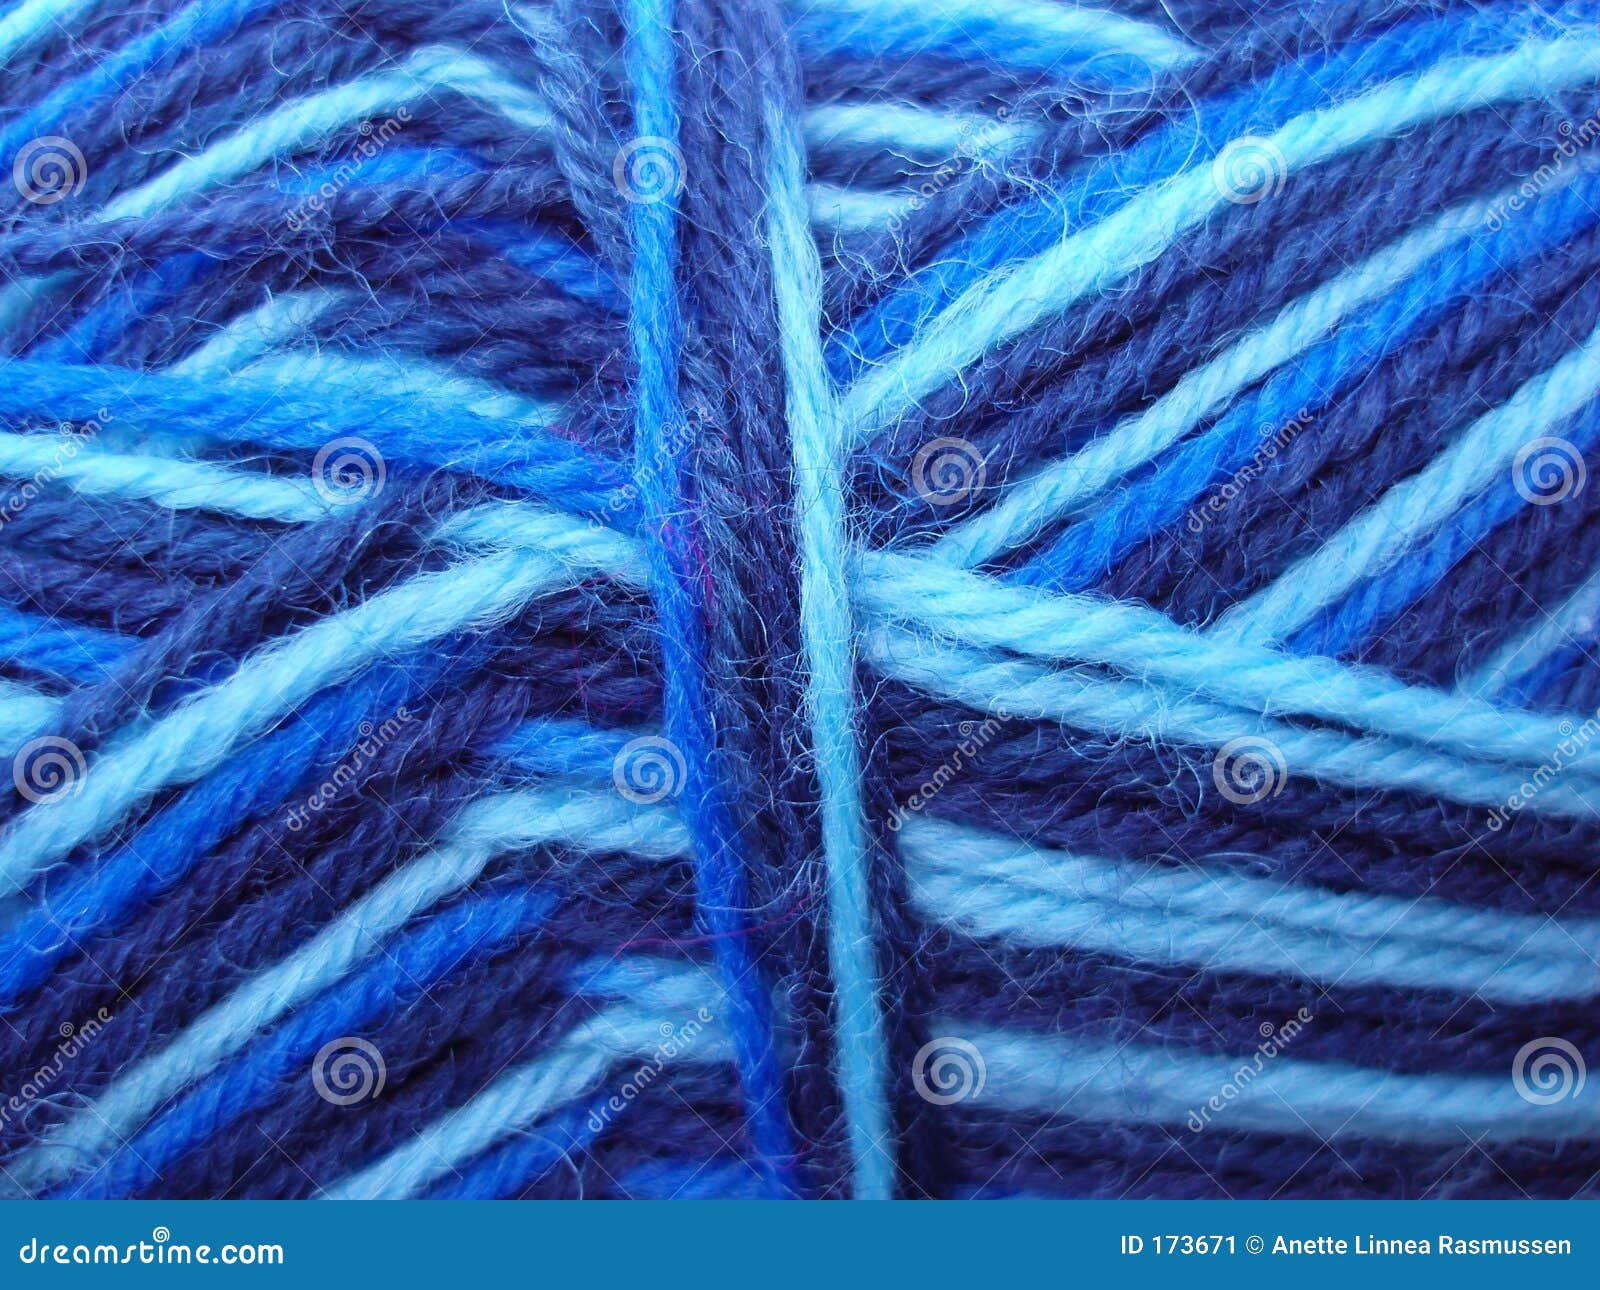 Пряжа синяя шерсть. Пряжа сине-голубая. Тканевой пряжи голубая. Синие нитки для вязания. Пряжа голубая текстура.